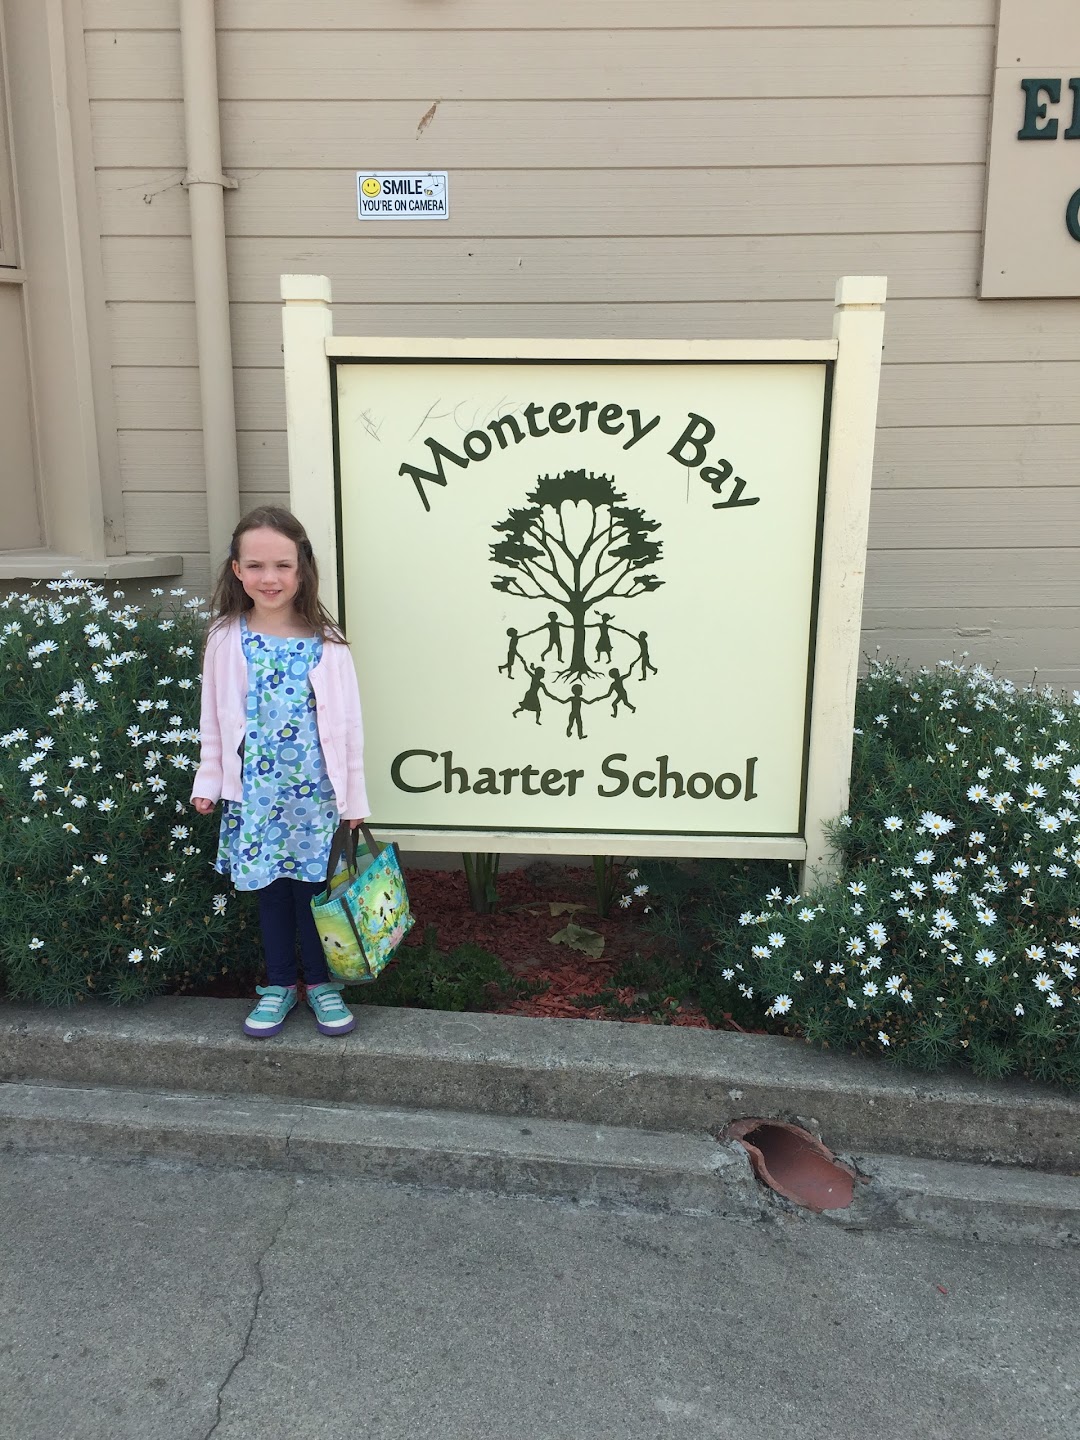 Monterey Bay Charter School